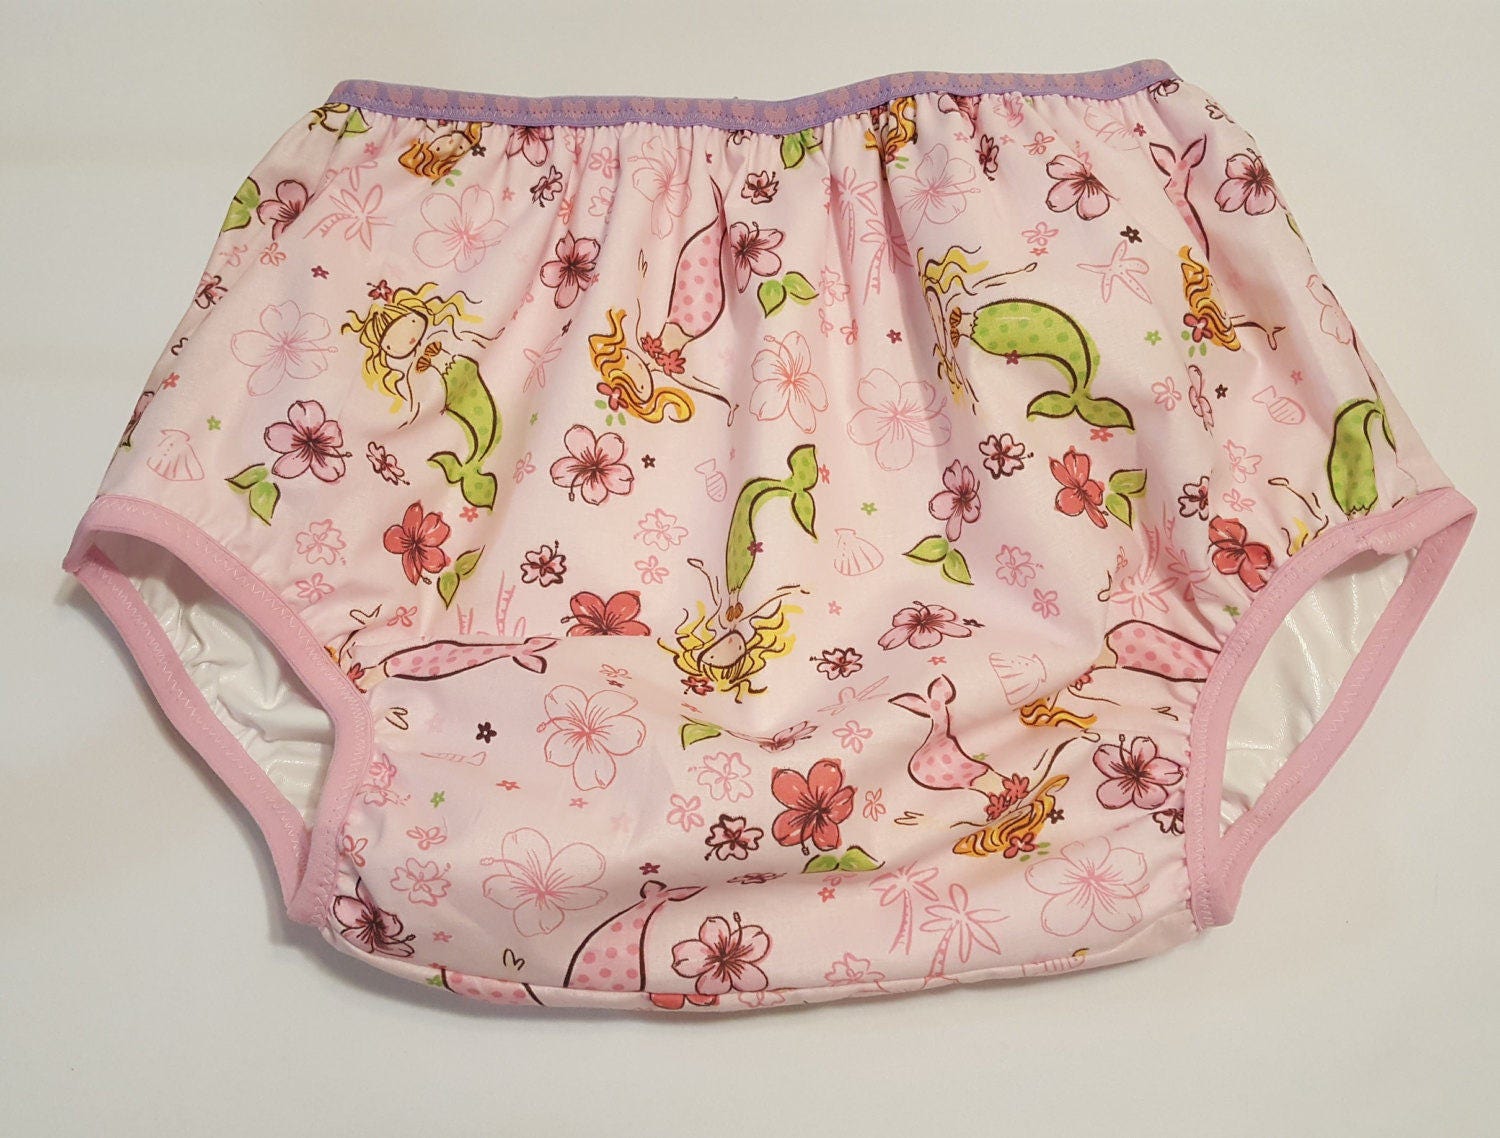 Adult Baby Diaper Cover Plastic Pants Pink Mermaids Print ABDL